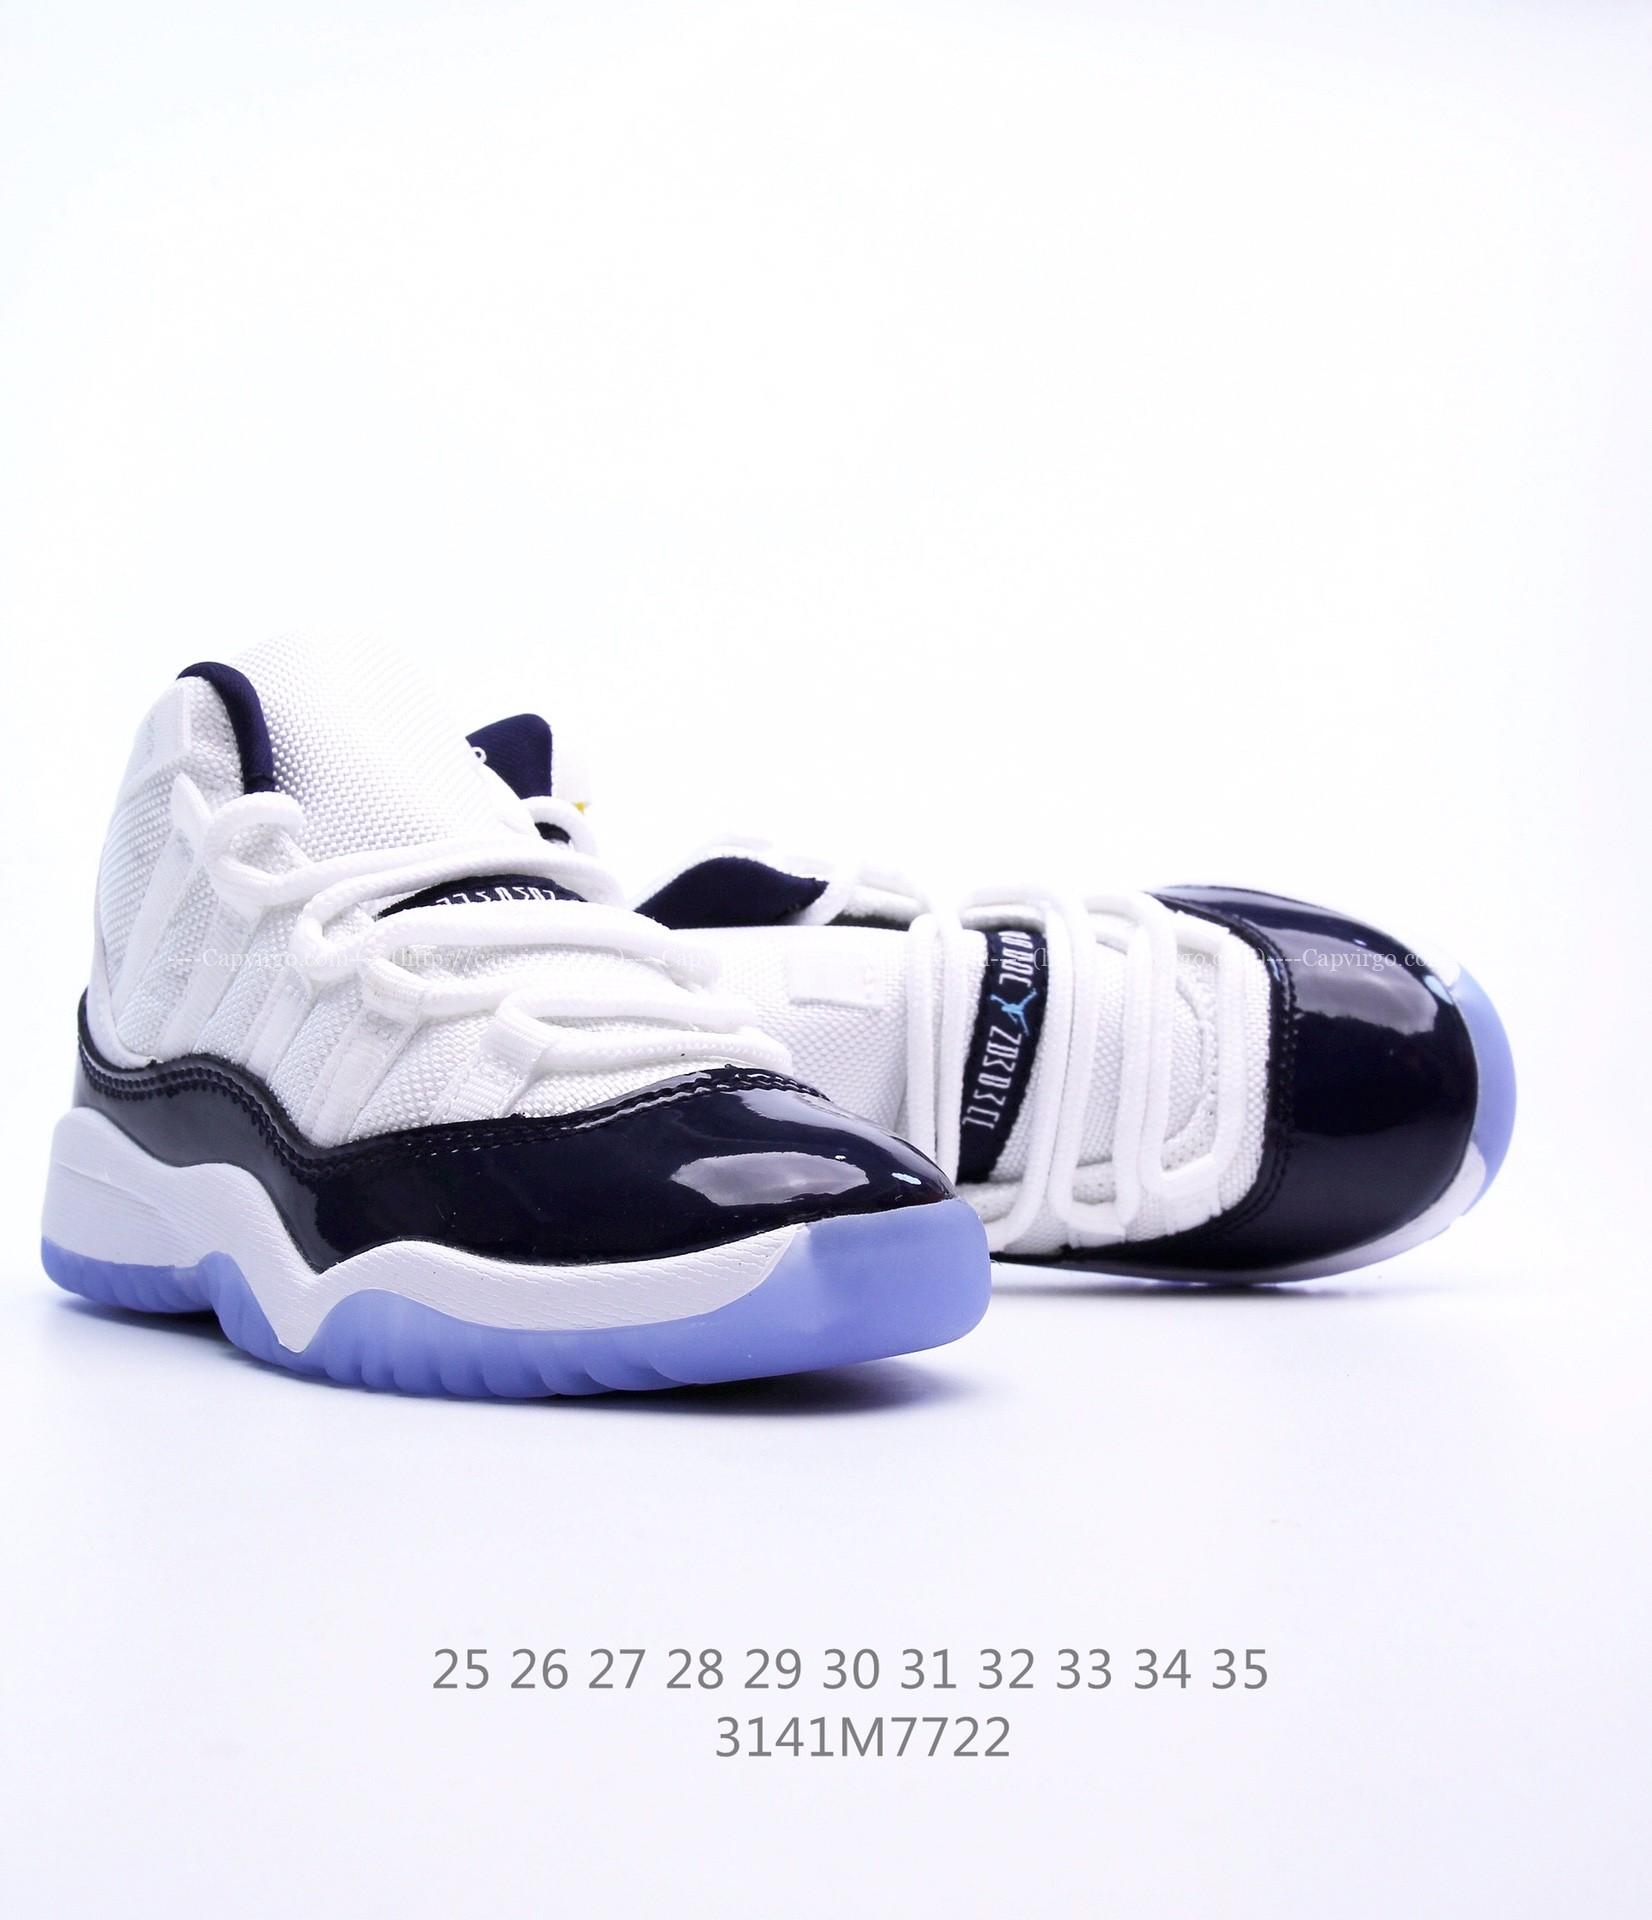 Giày Air Jordan 11 Platinum Tint trẻ em siêu cấp màu trắng viền đen